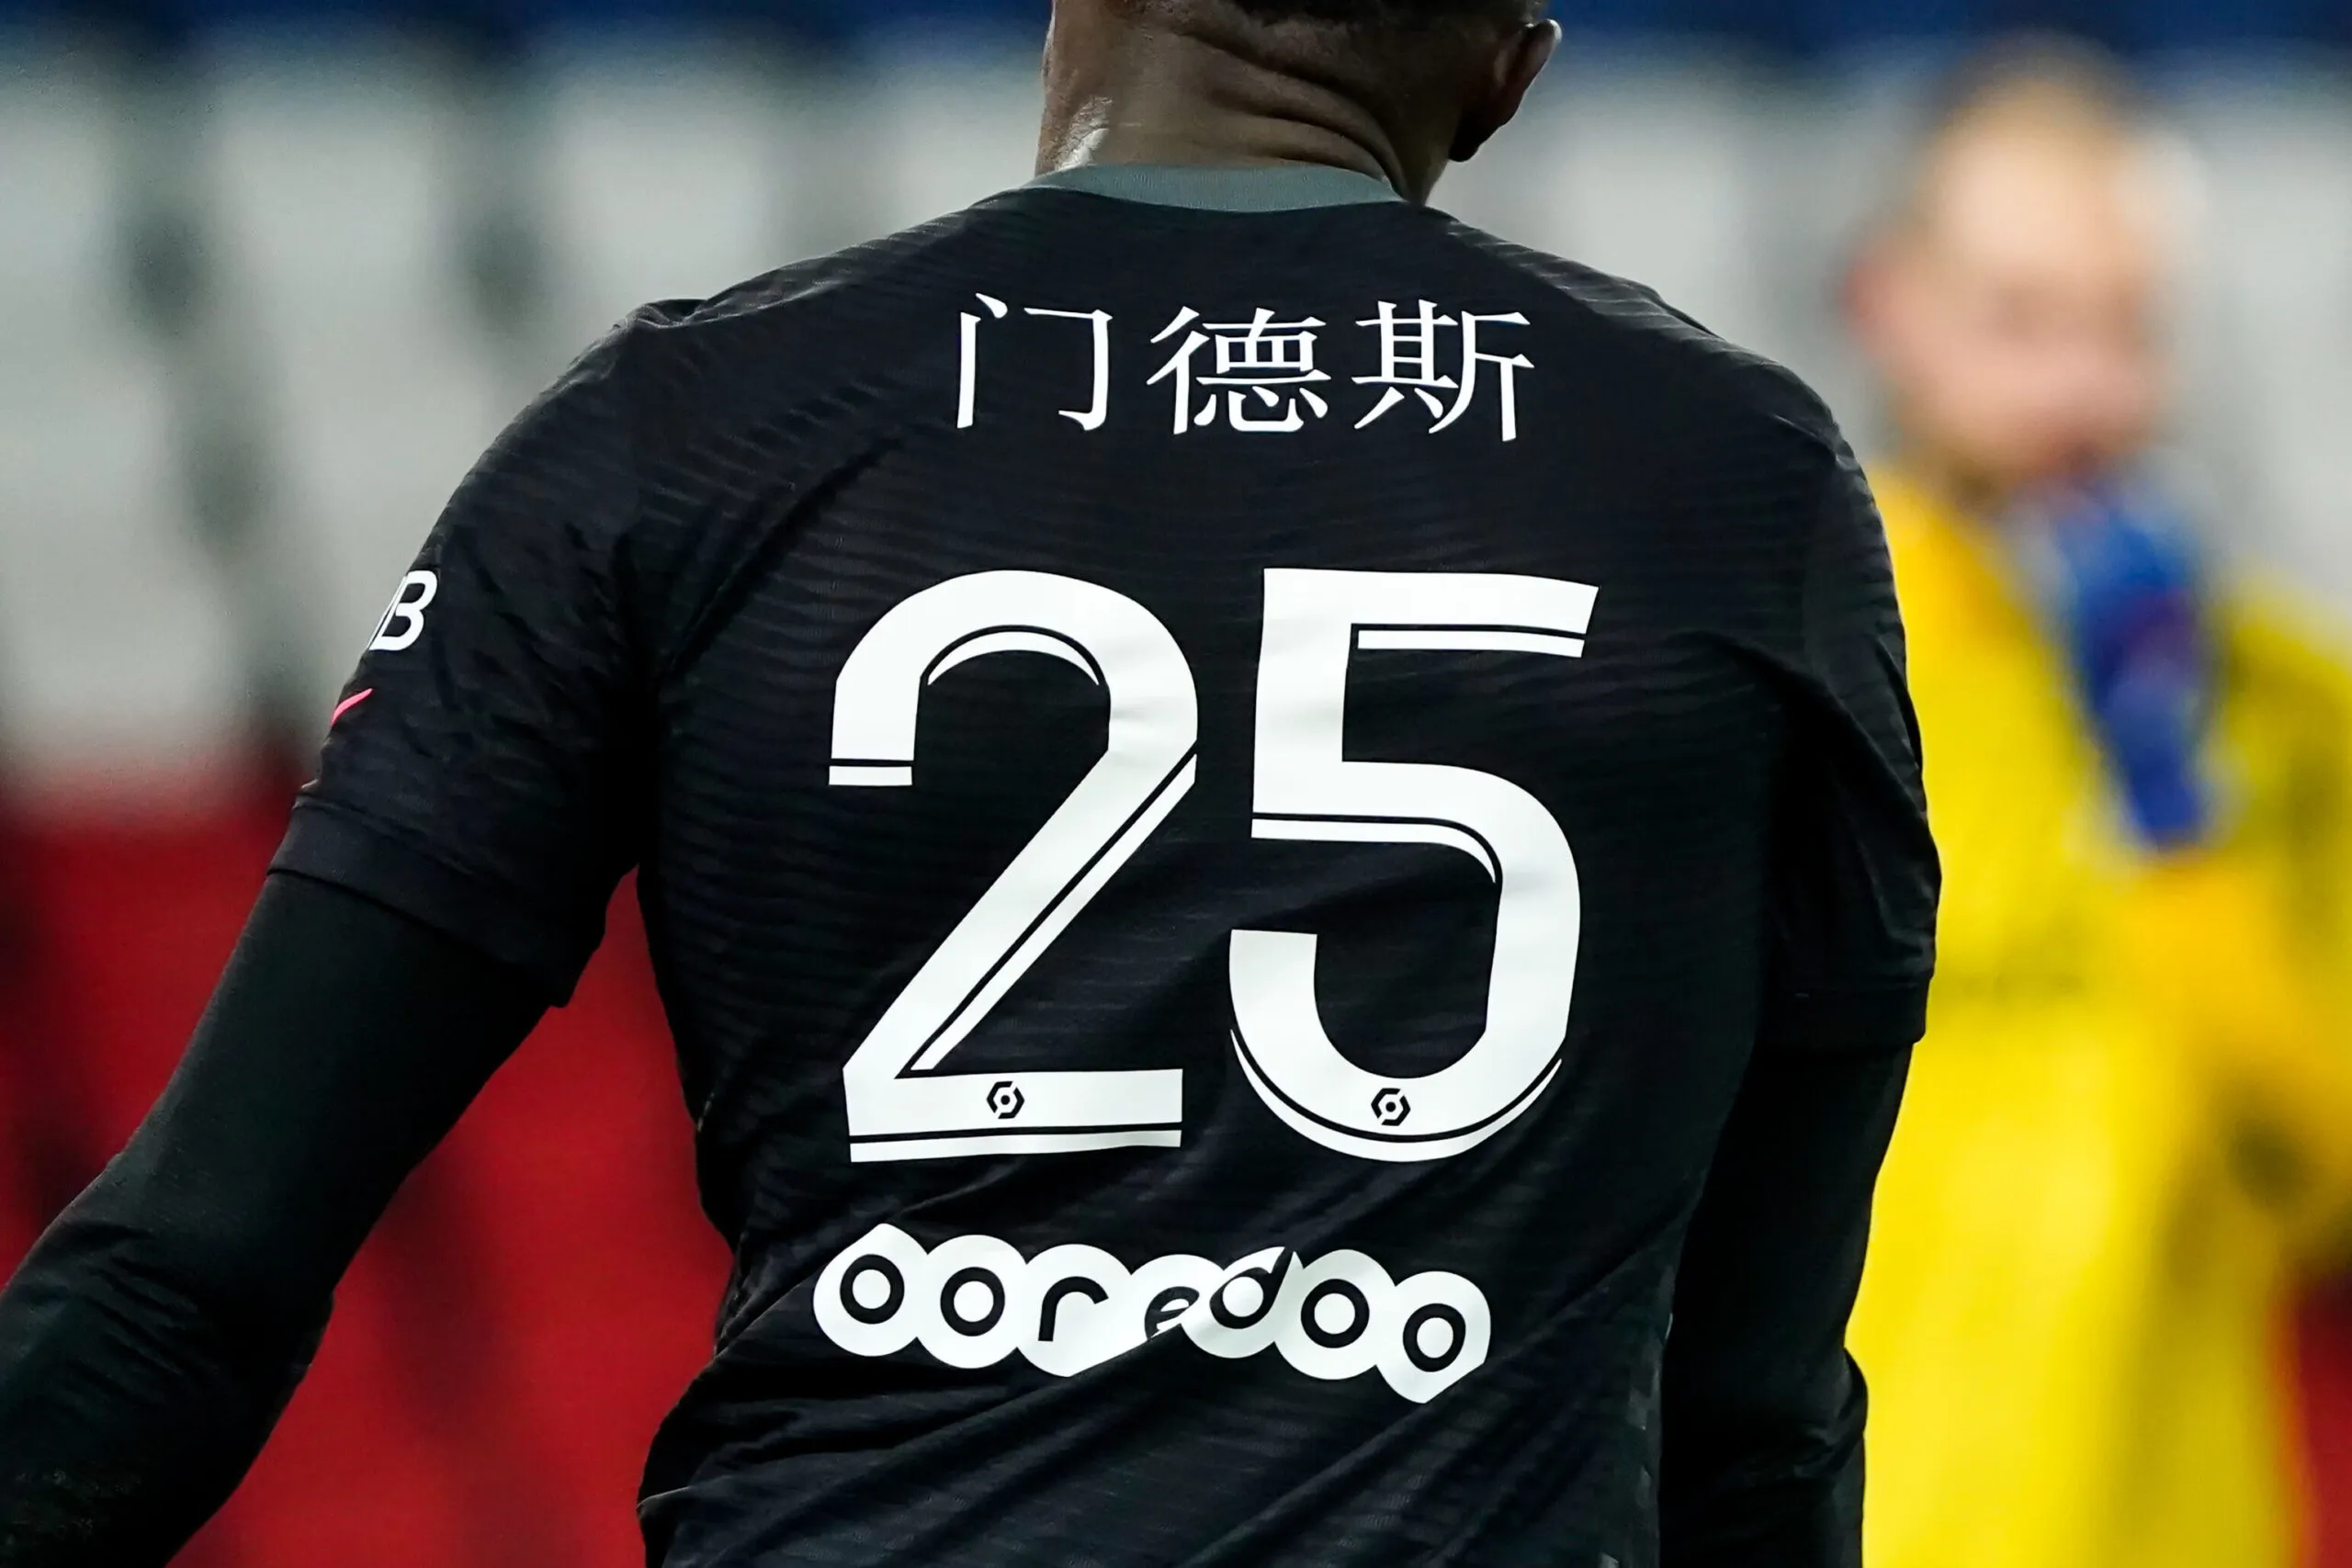 Le PSG célèbre le Nouvel An chinois avec un maillot spécial